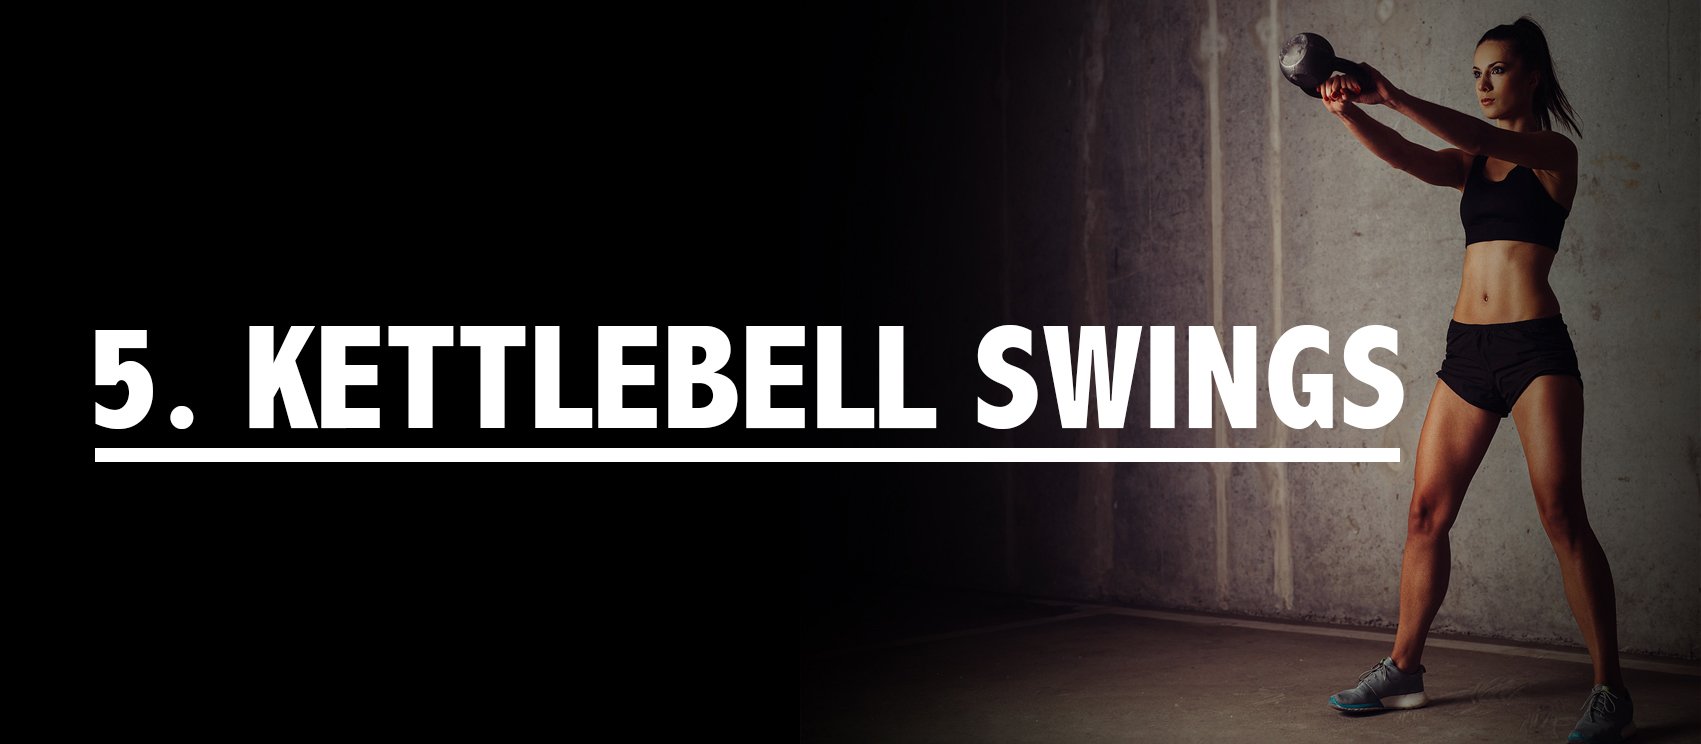 kettlebell-swings-belly-fat-reduction.jpg